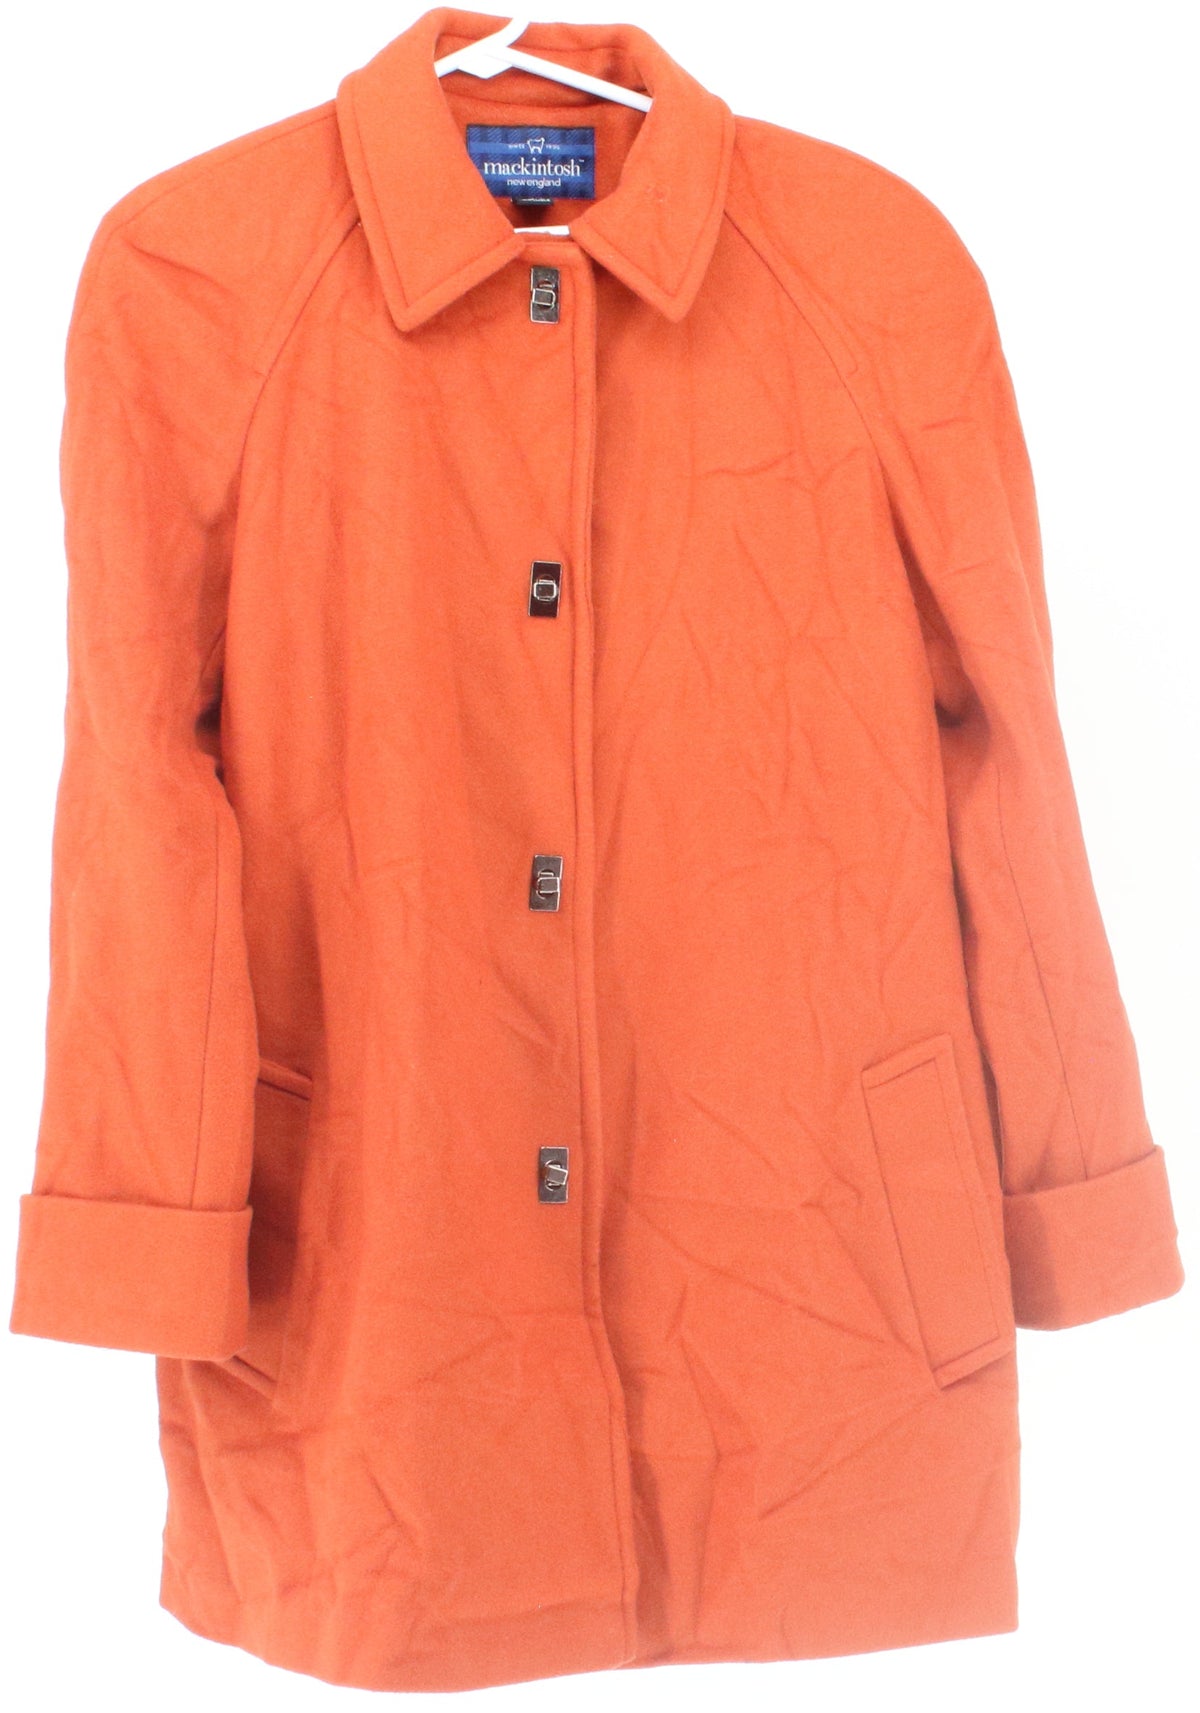 Mackintosh Orange Women's Wool Coat